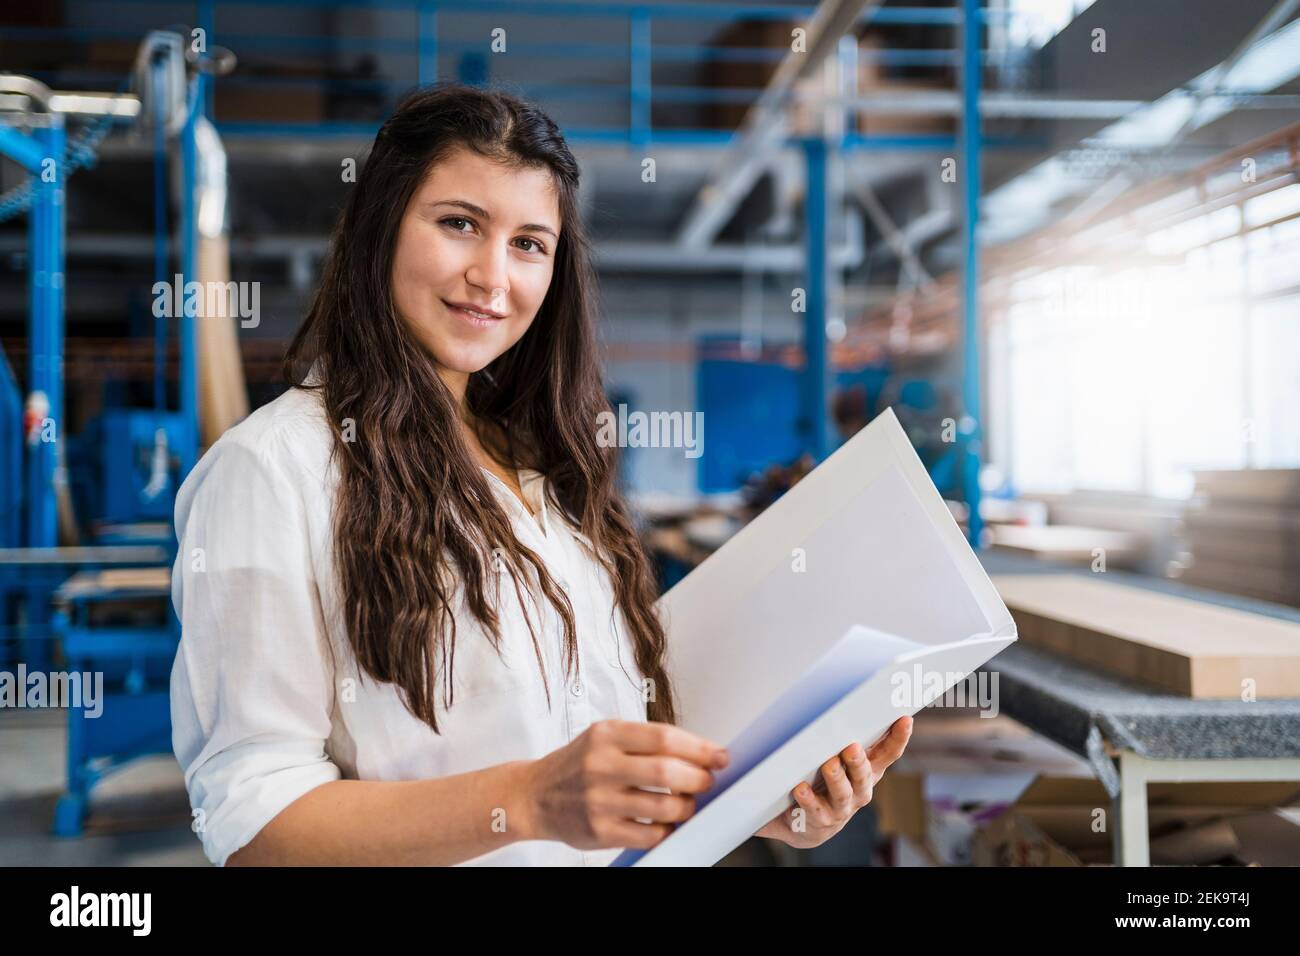 Lächelndes Know-how, das Papierkram überprüft, während man in der Industrie steht Stockfoto